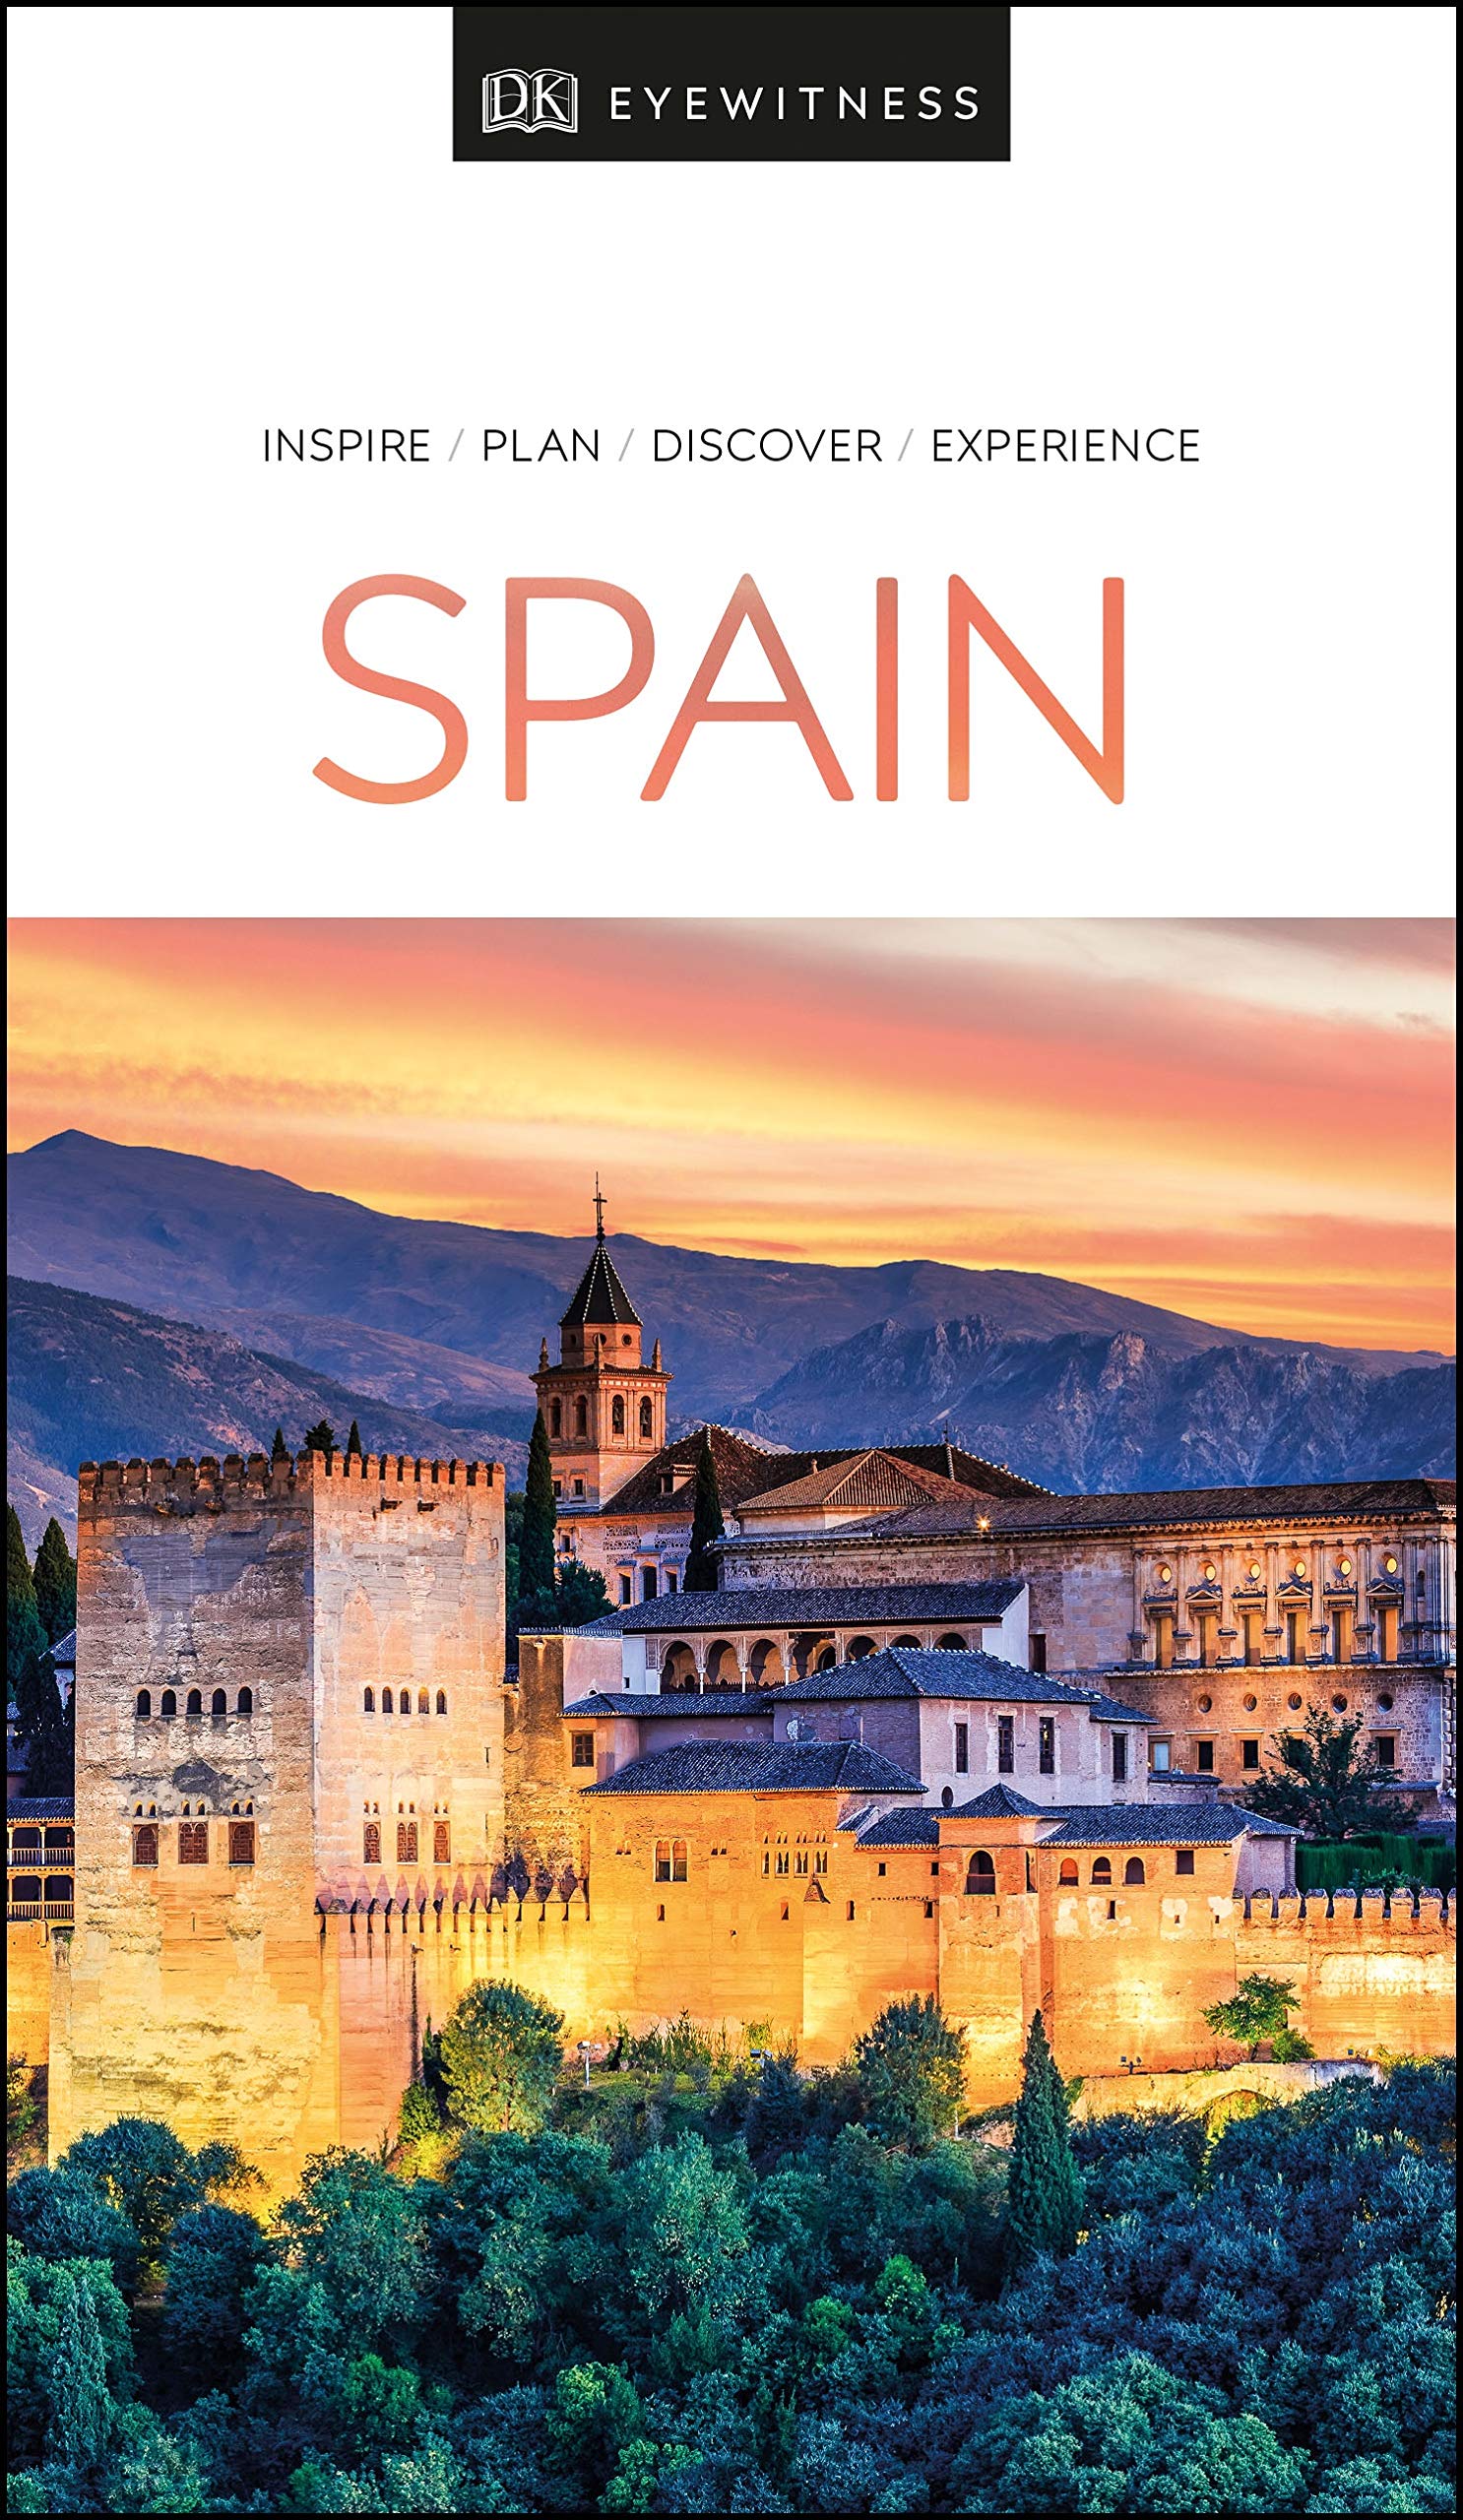 DK Eyewitness Travel Guide Spain | DK Travel image20